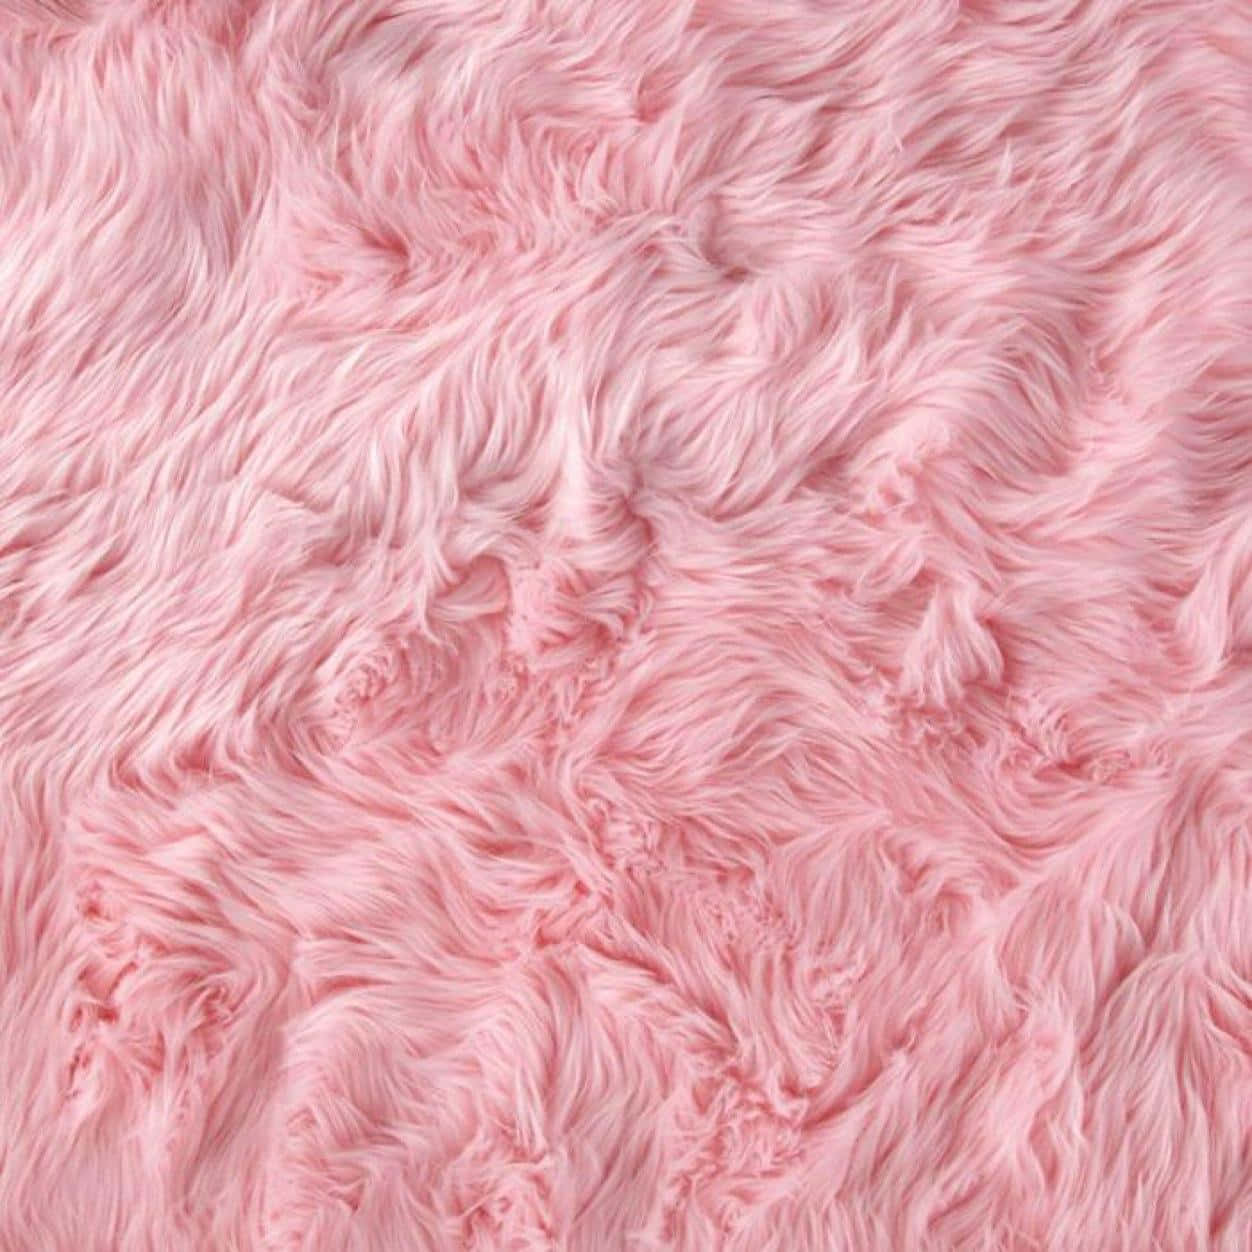 Fuzzy Pink Fur Coat Wallpaper